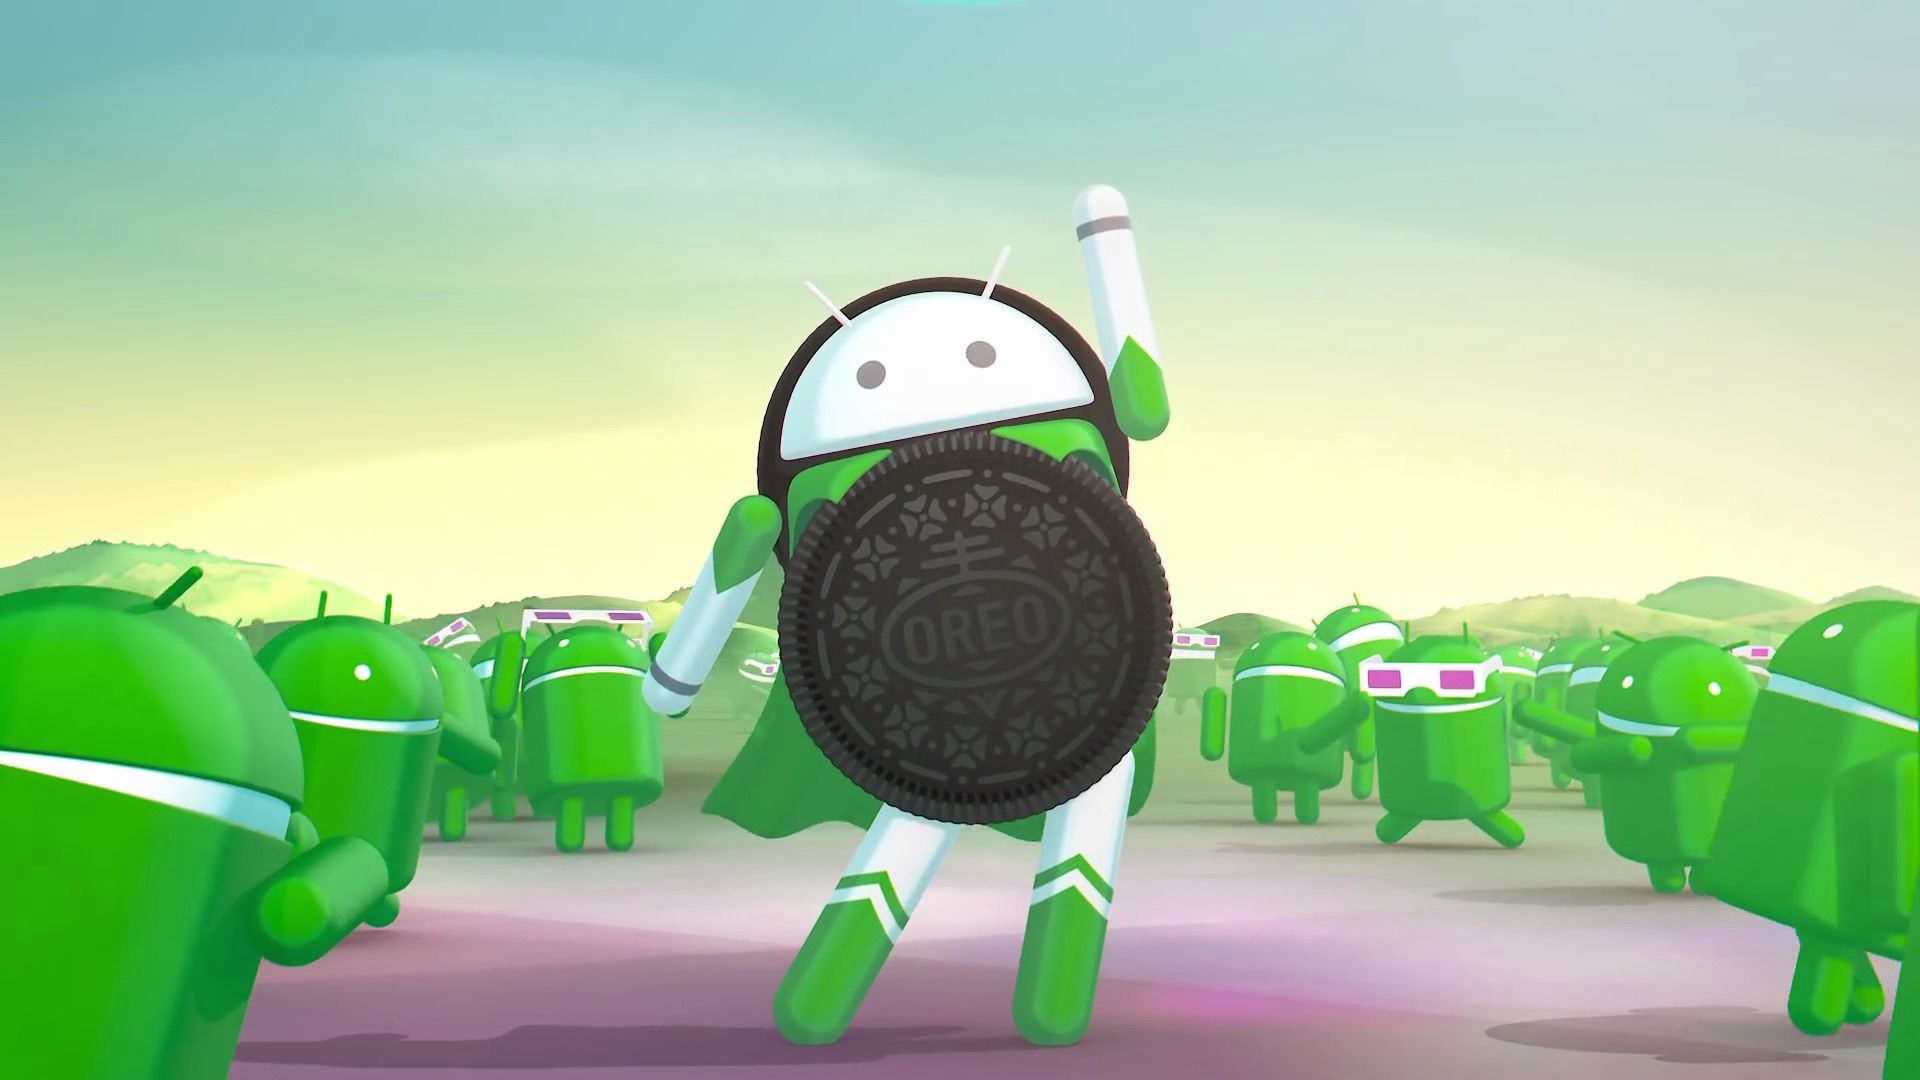 Robô Android Oreo